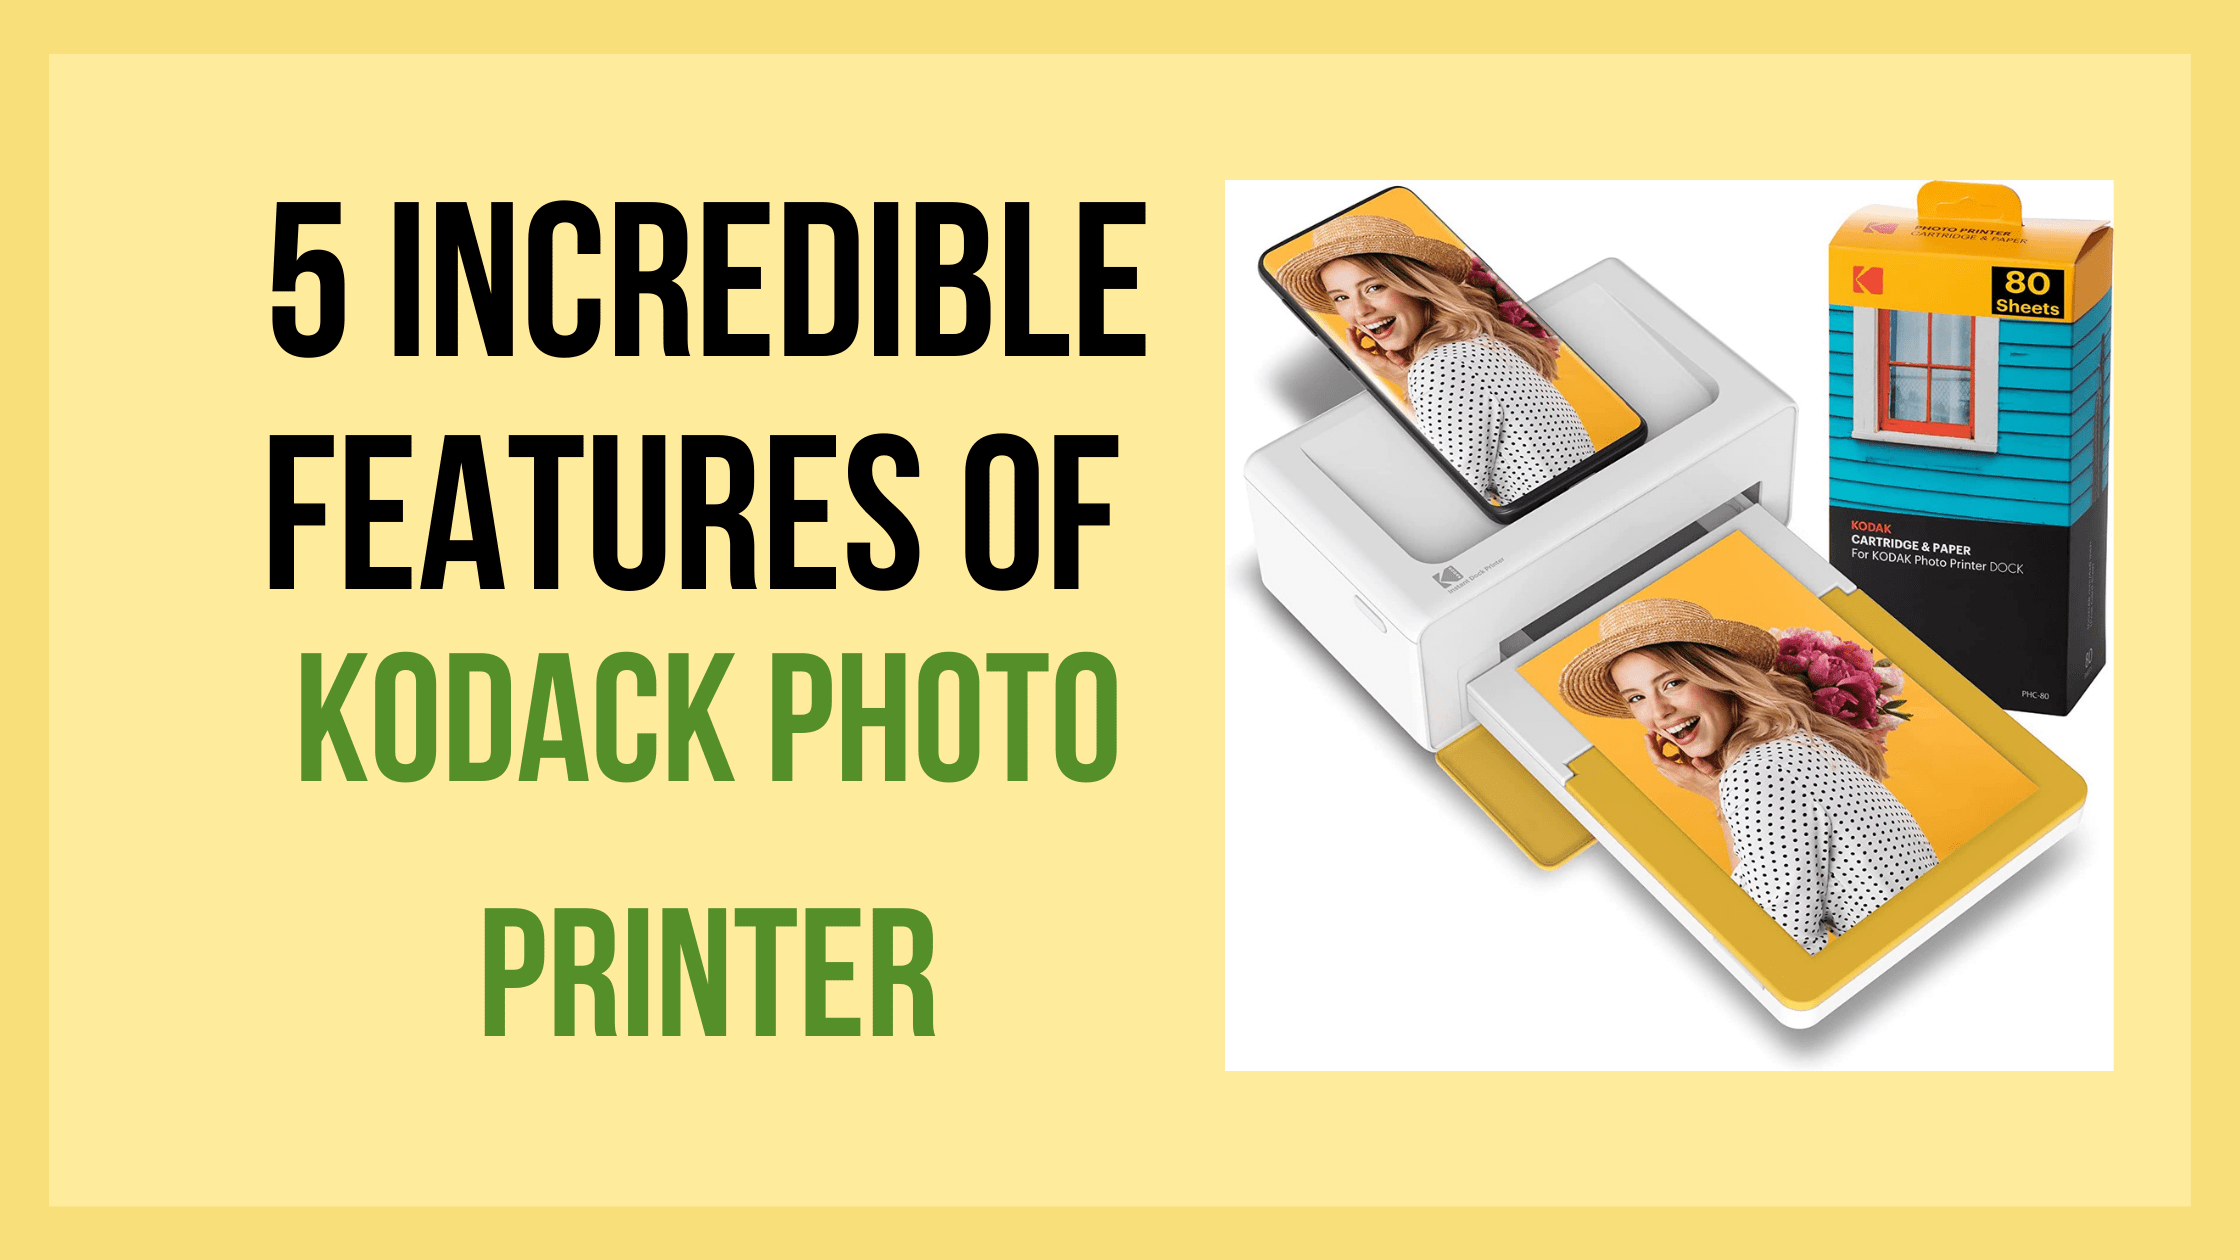 Kodack Photo Printer